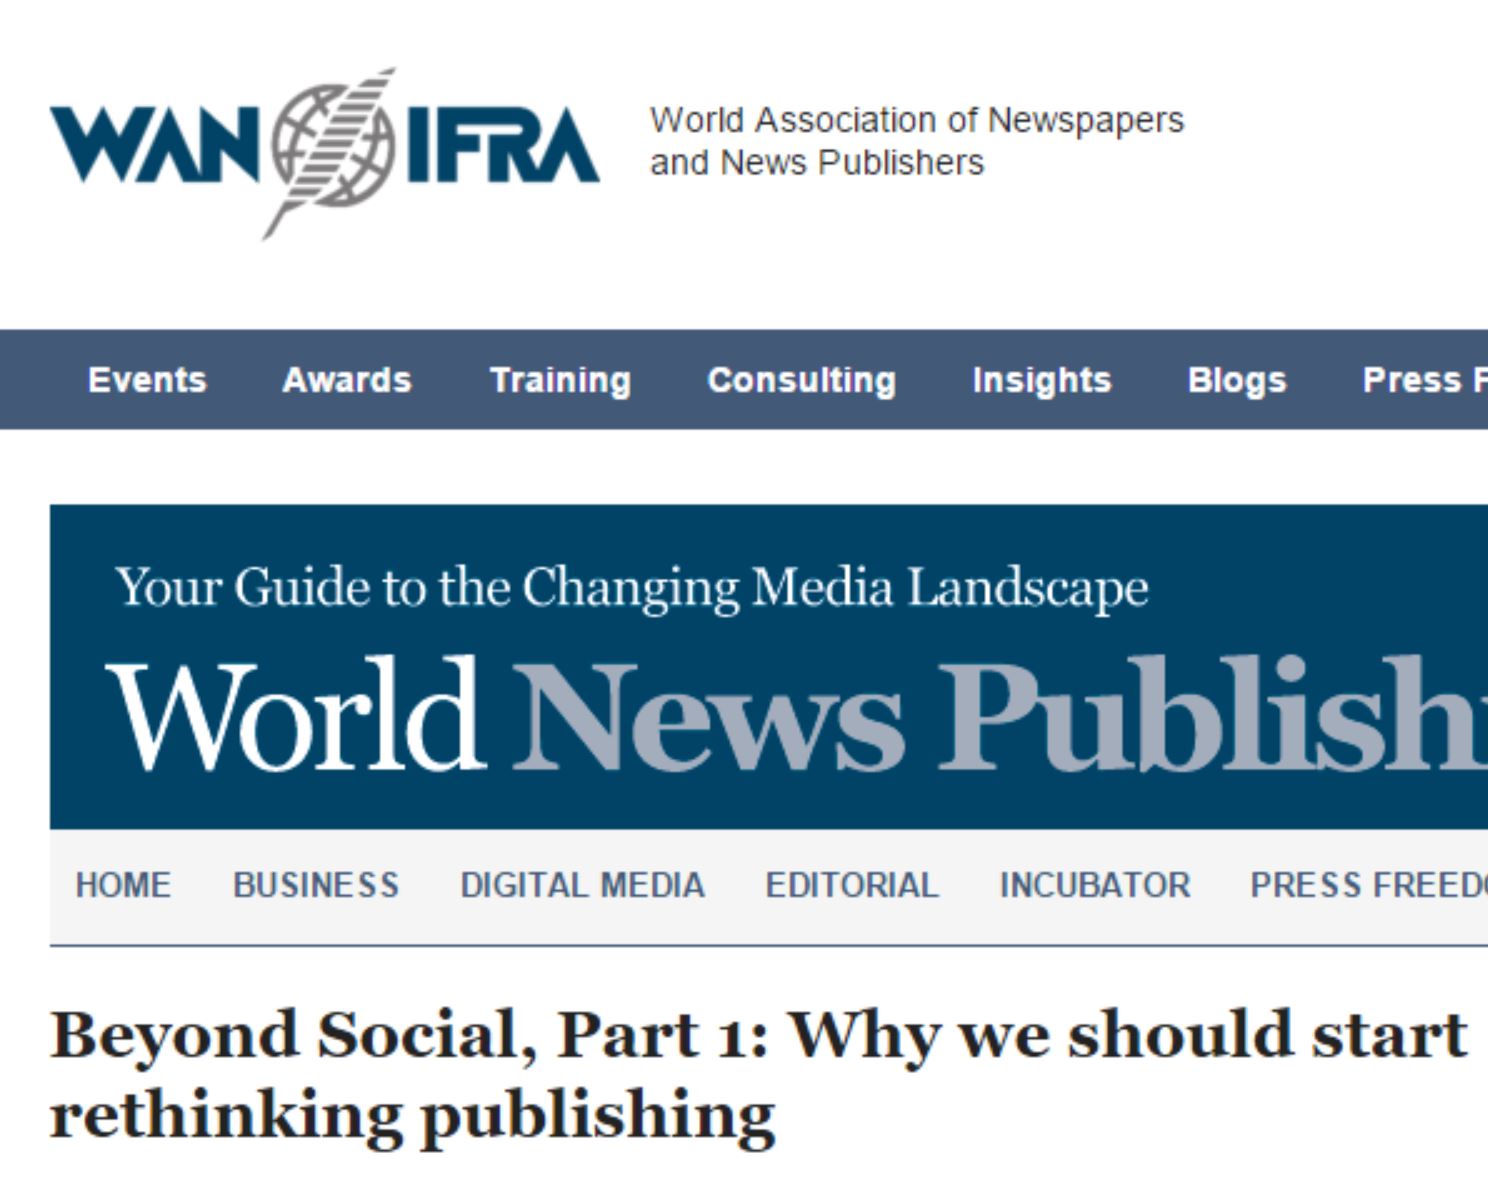 Why we should start rethinking publishing